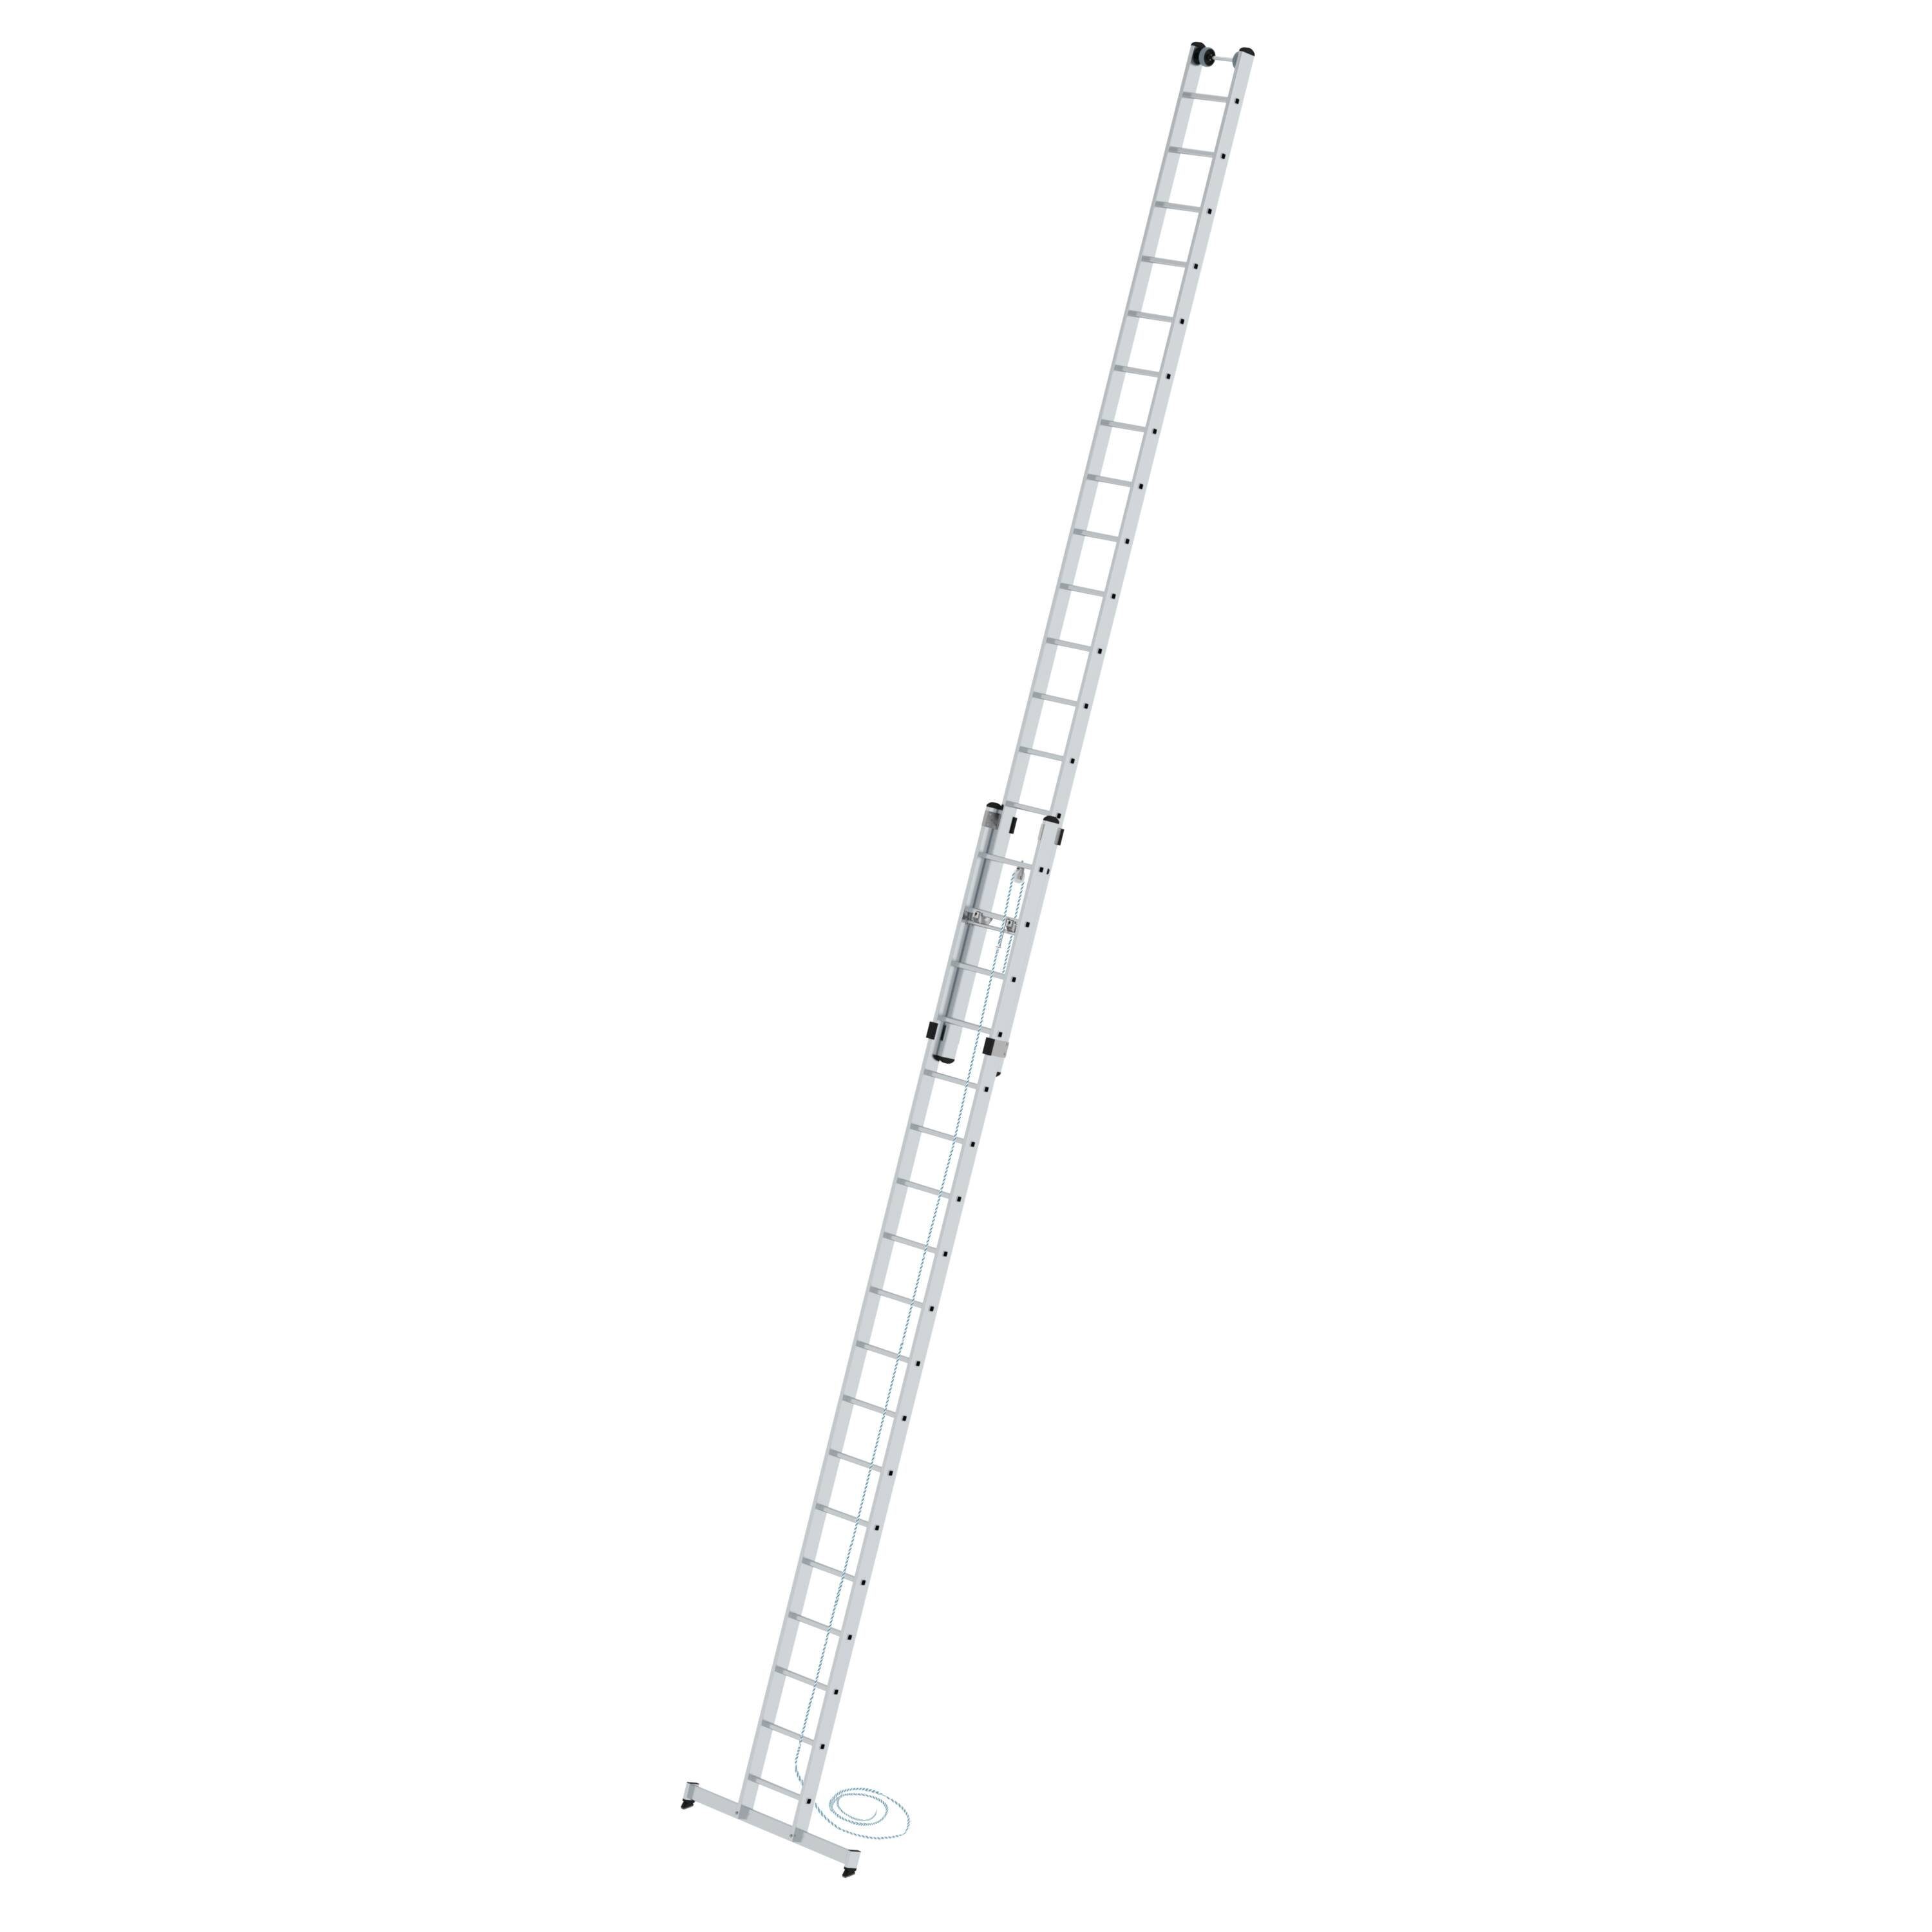 Sprossen-Seilzugleiter Sprossen 2x18 mit PROREGAL® nivello®-Traverse Schiebeleiter 2-teilig